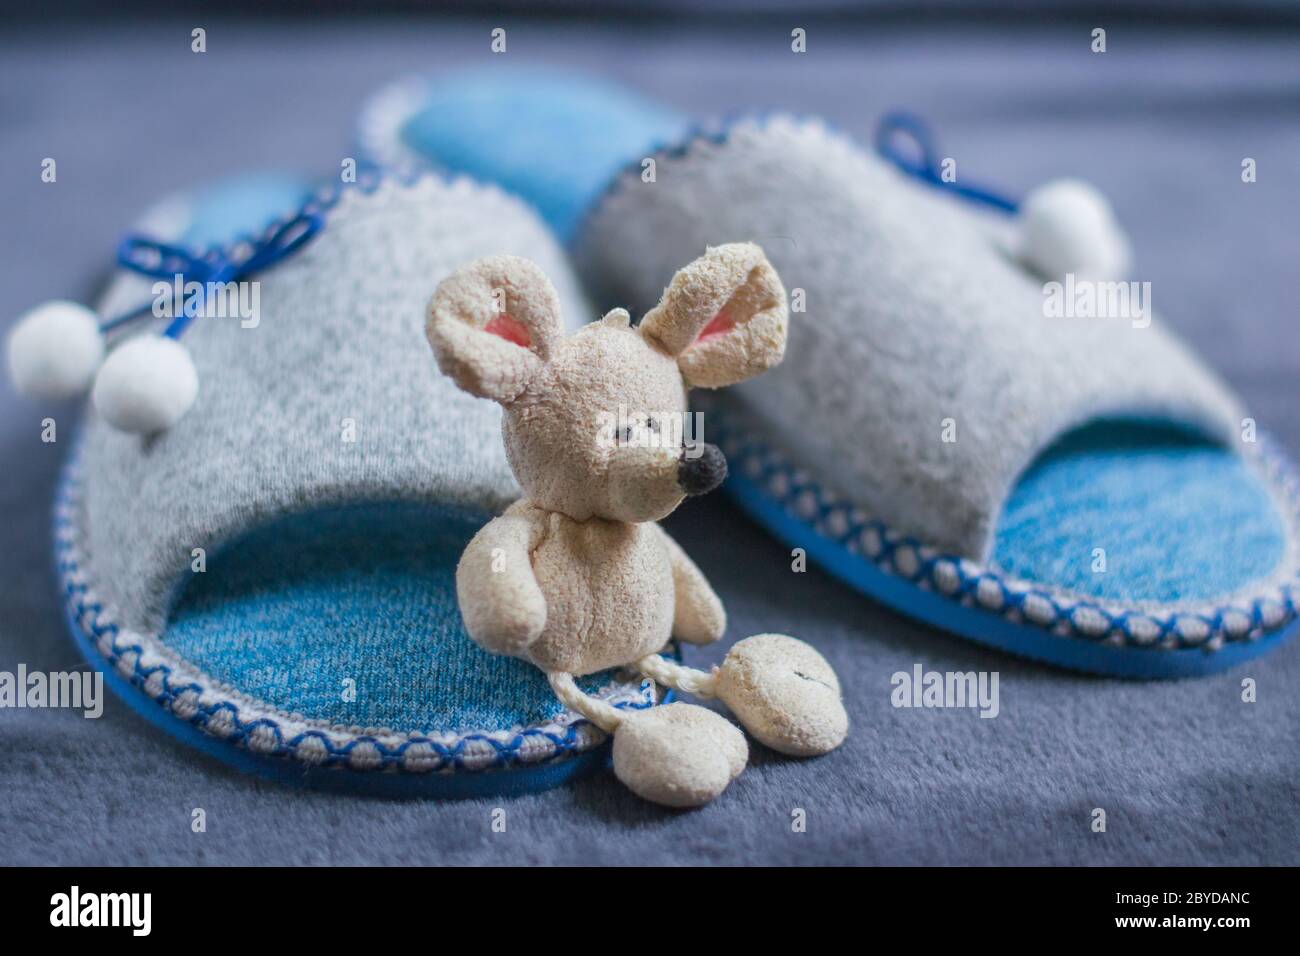 Un mouse giocattolo si trova sulle pantofole con i pompon in piedi su un tappeto soffice. Abbigliamento e scarpe per donne o bambini. Il concetto di calore domestico. Foto Stock